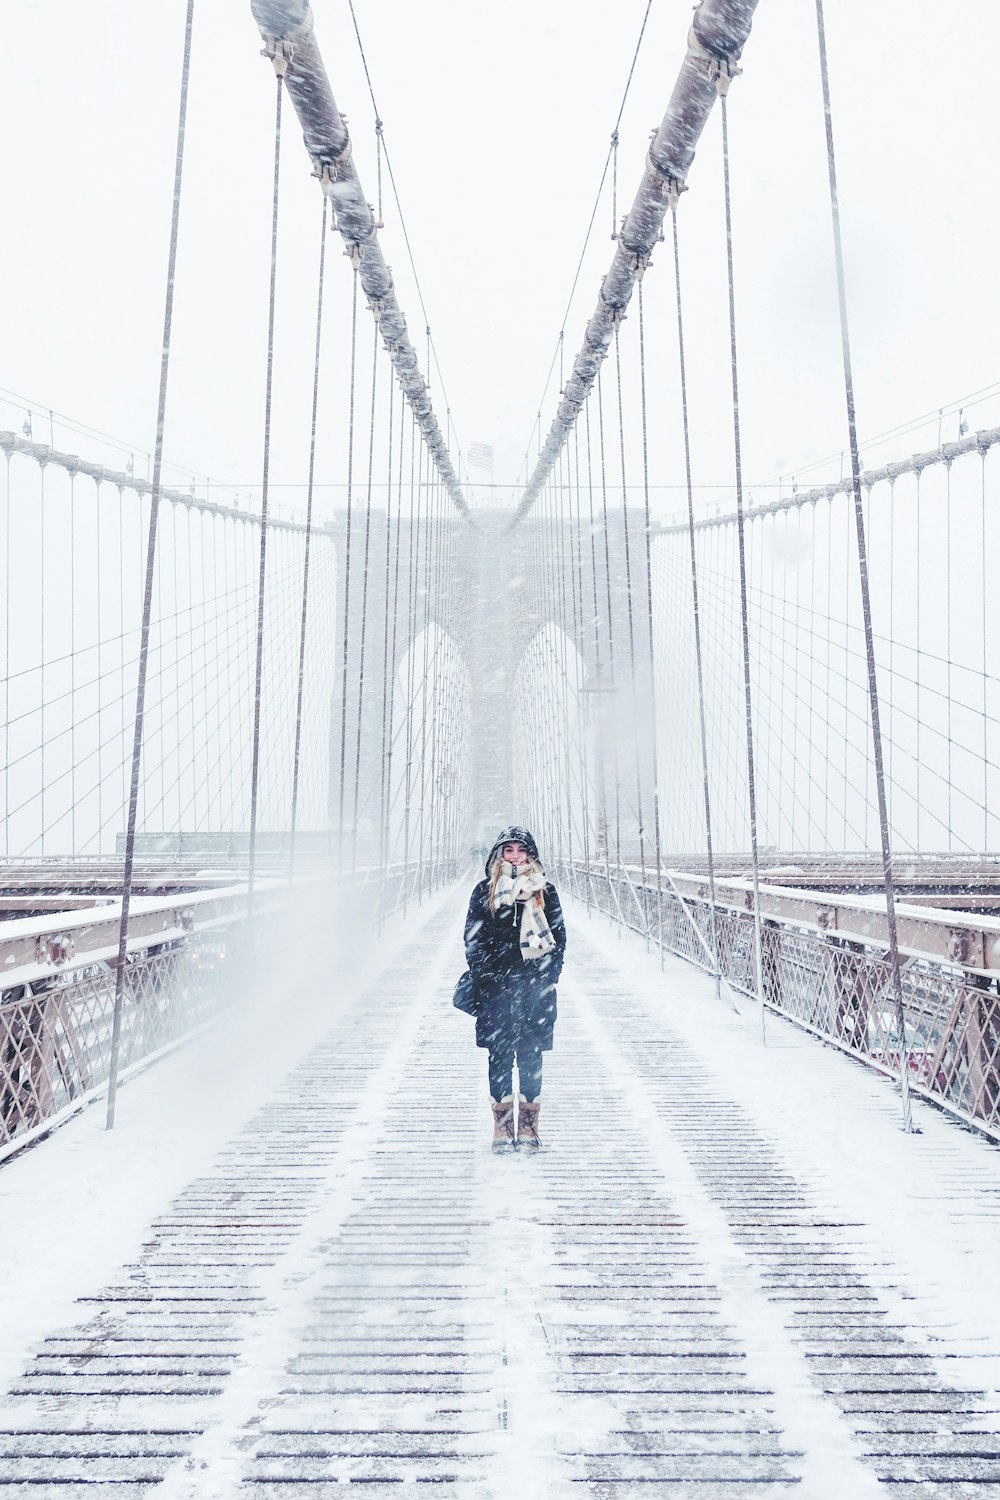 A woman walking across the Brooklyn Bridge in winter attire